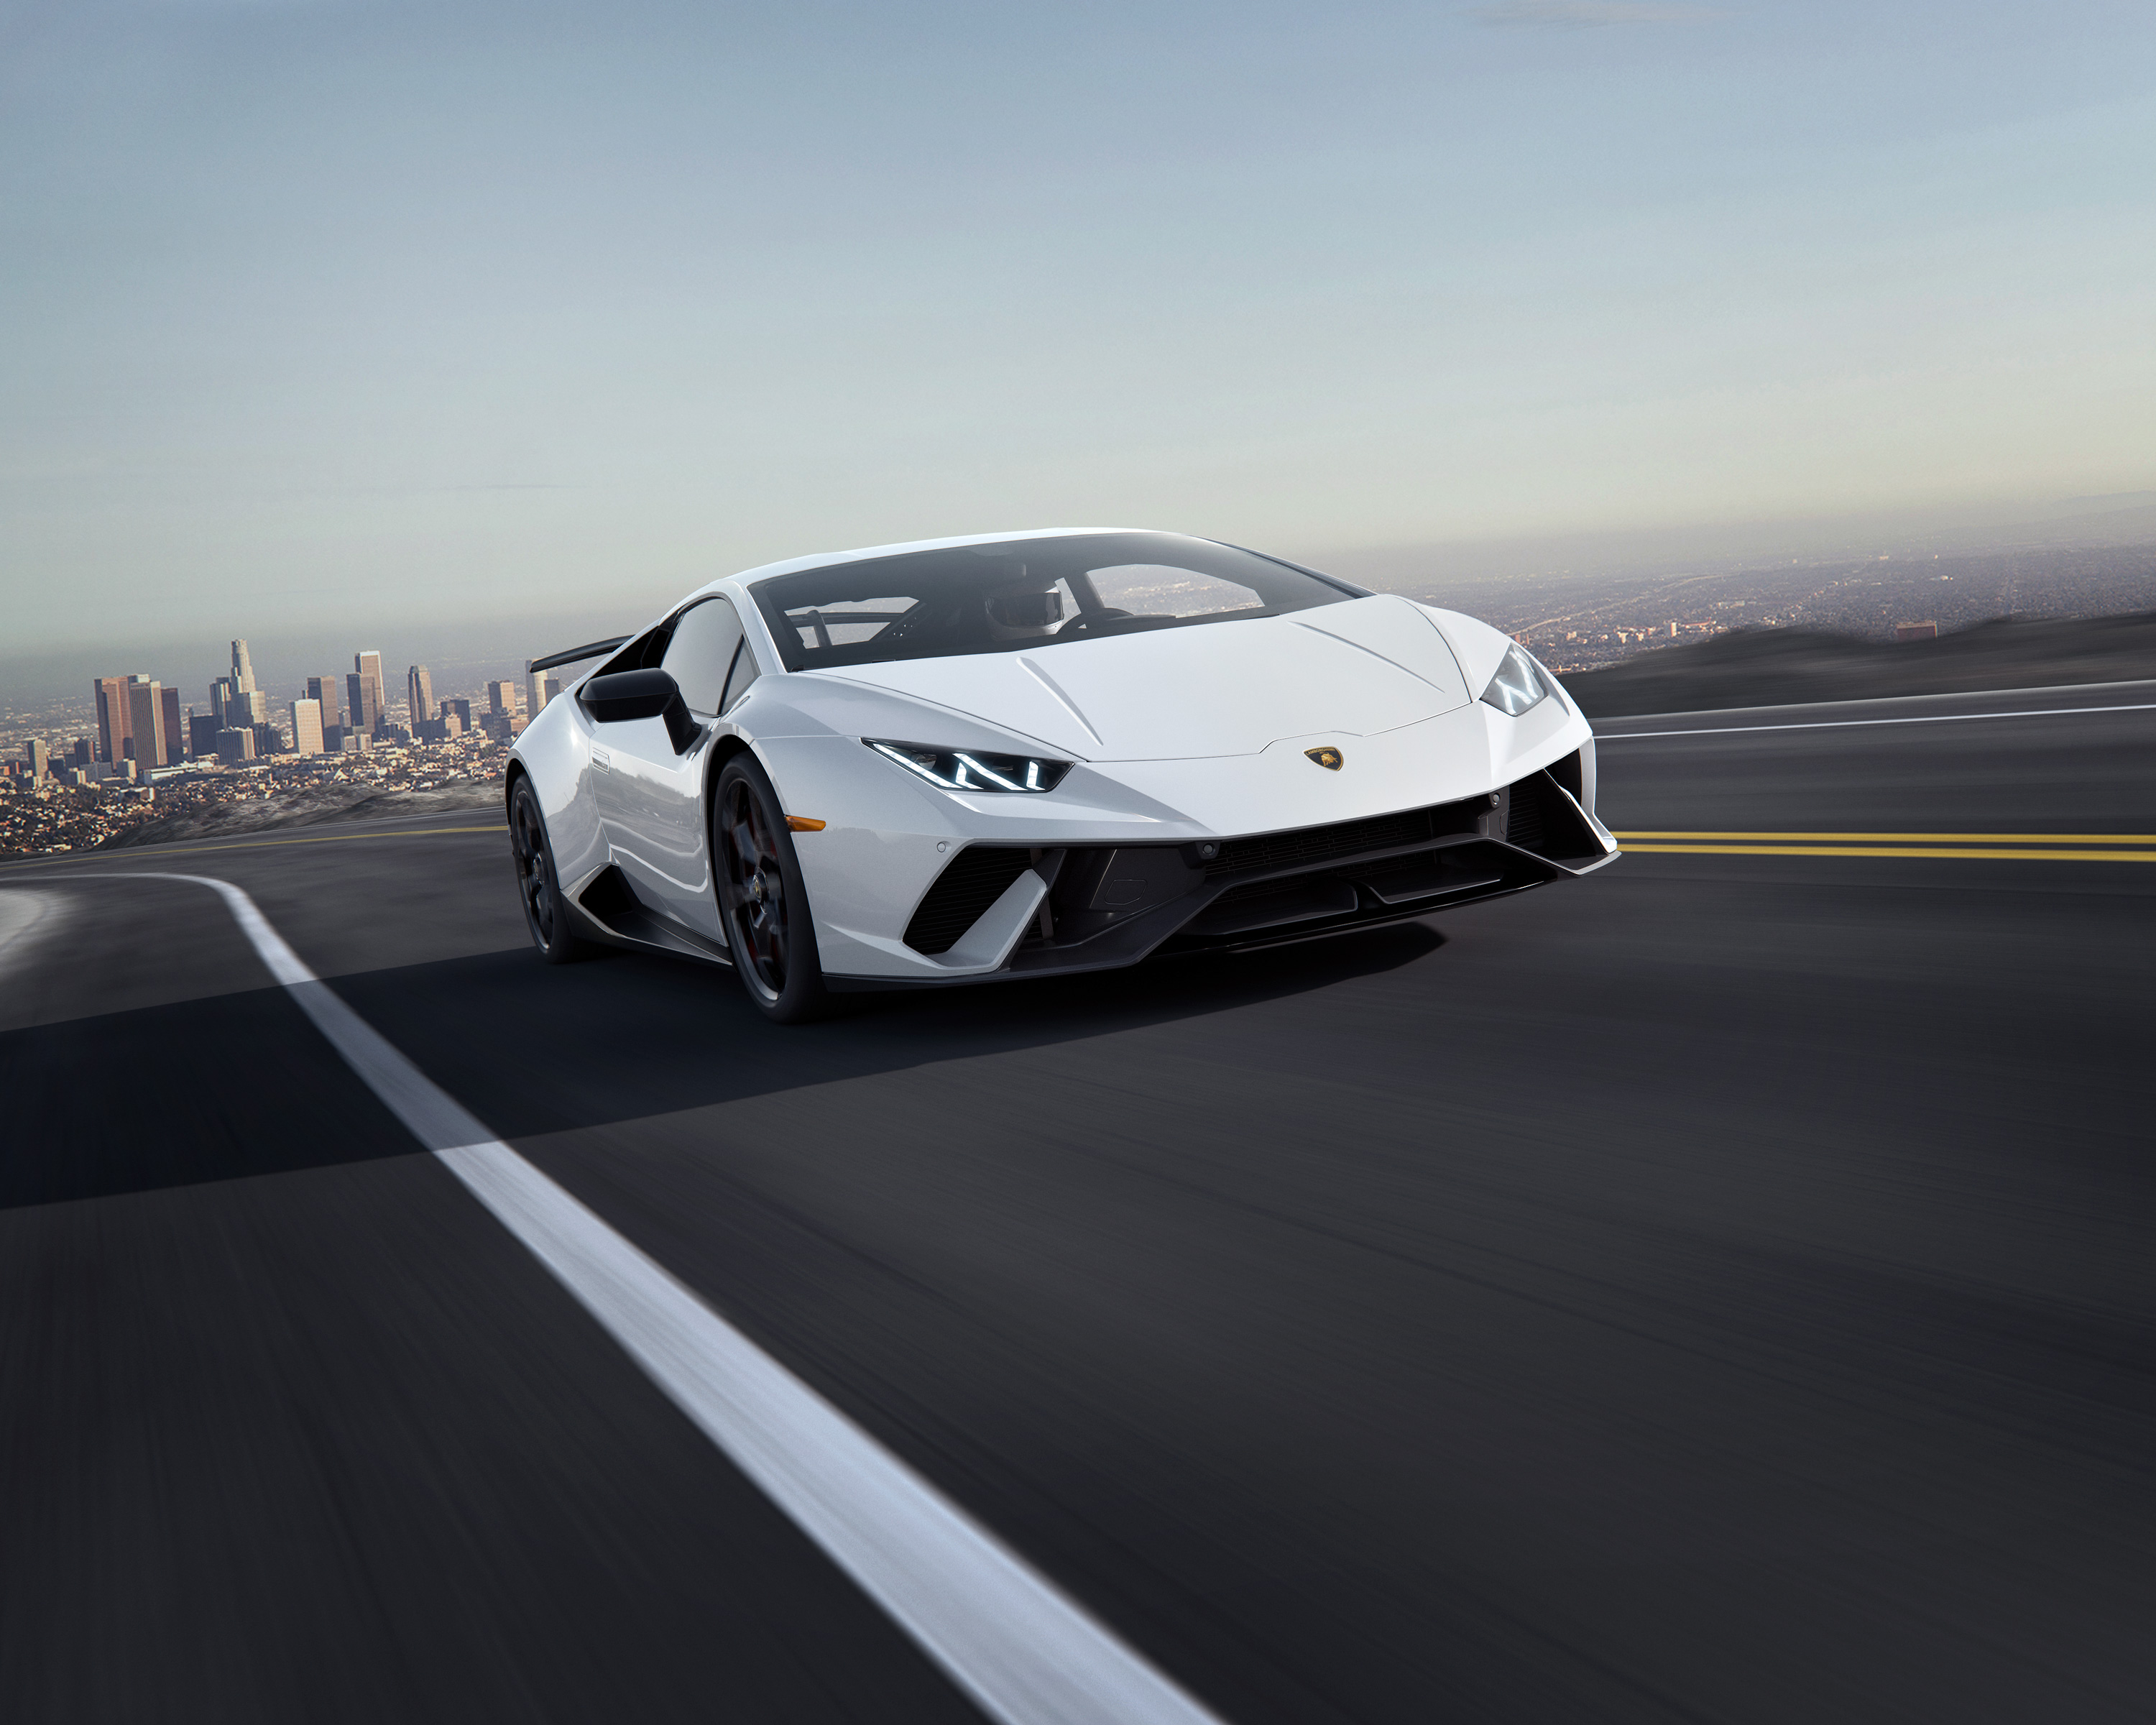 Lamborghini Huracan Performante CGI, HD Cars, 4k Wallpapers, Images